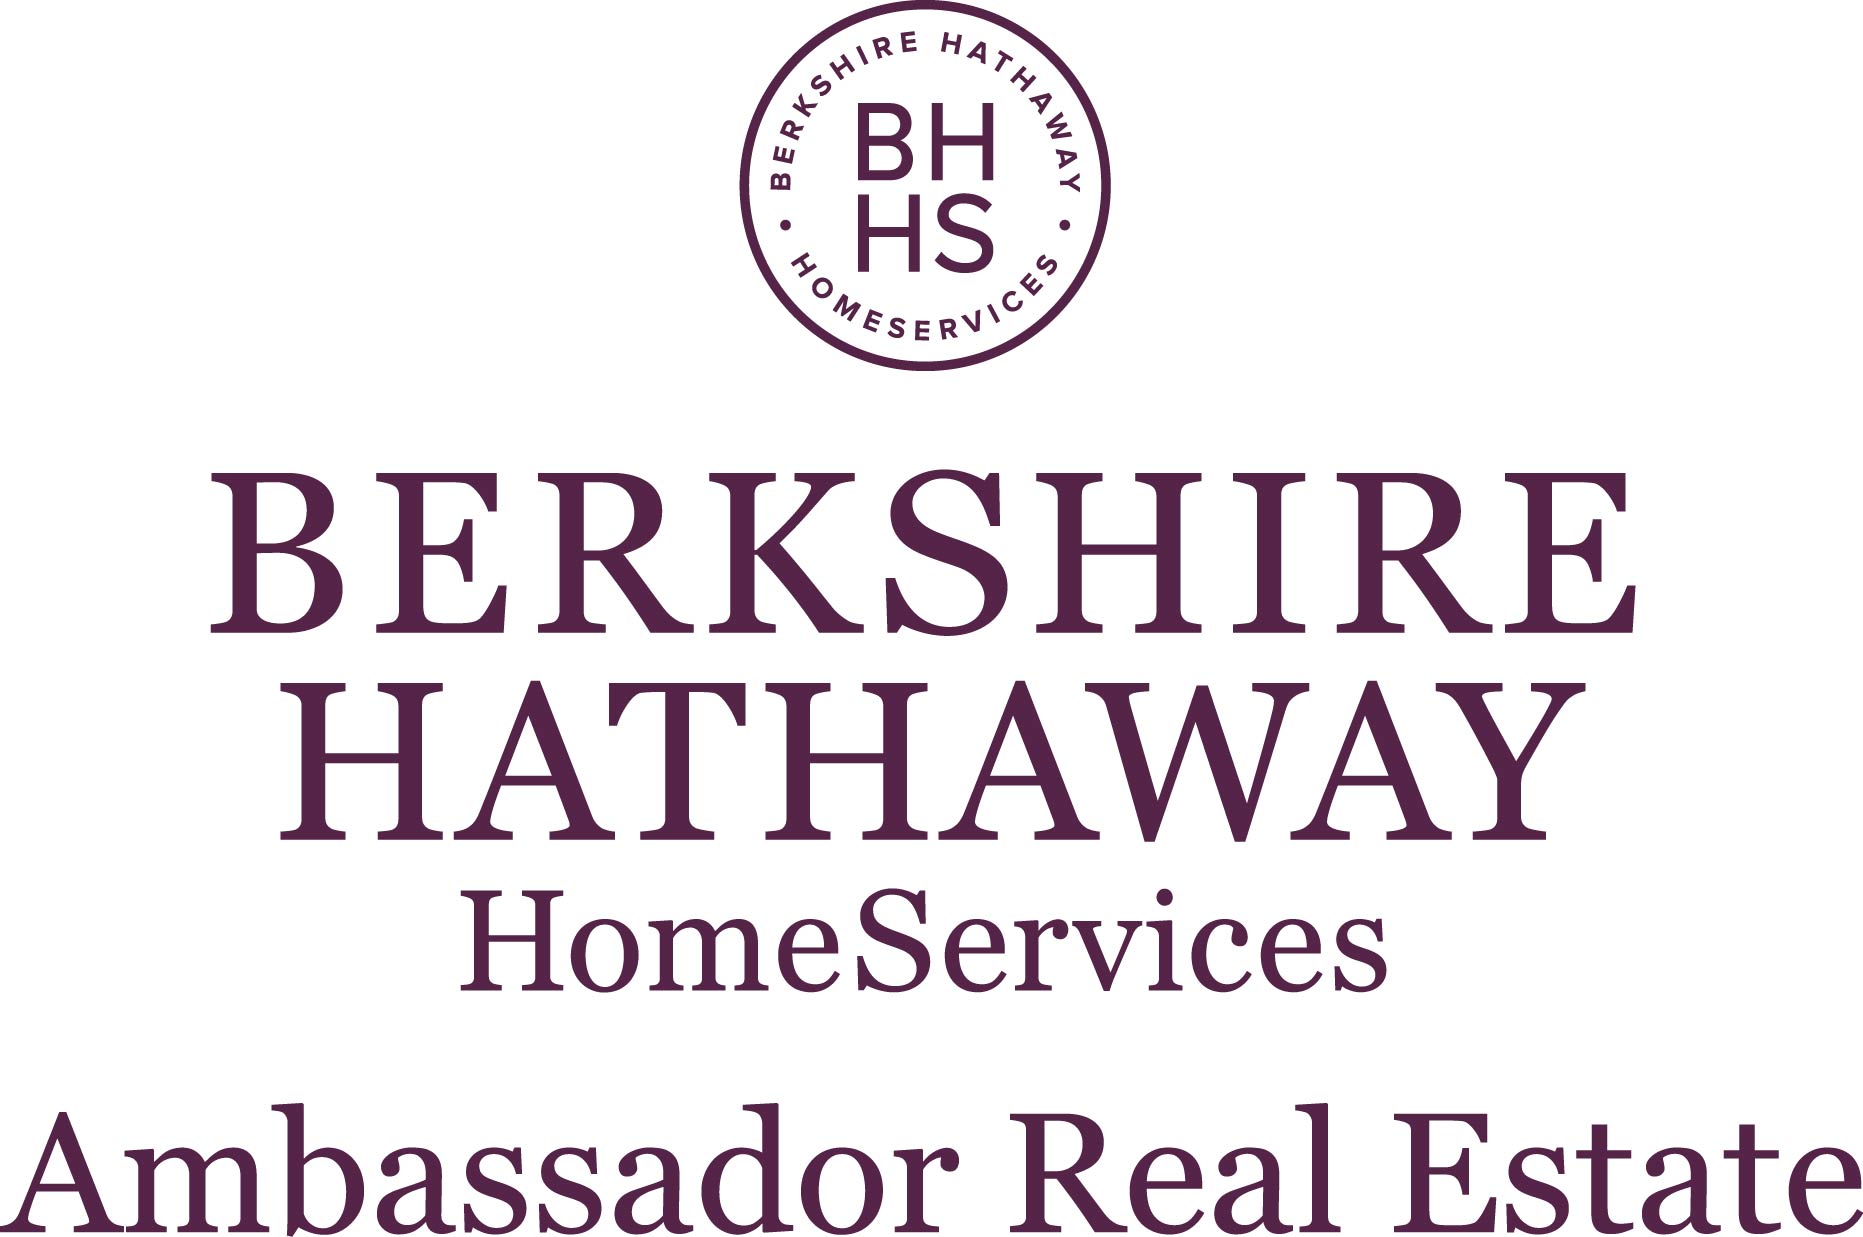 Connie Betz, Berkshire Hathaway HomeServices Ambassador Real Estate